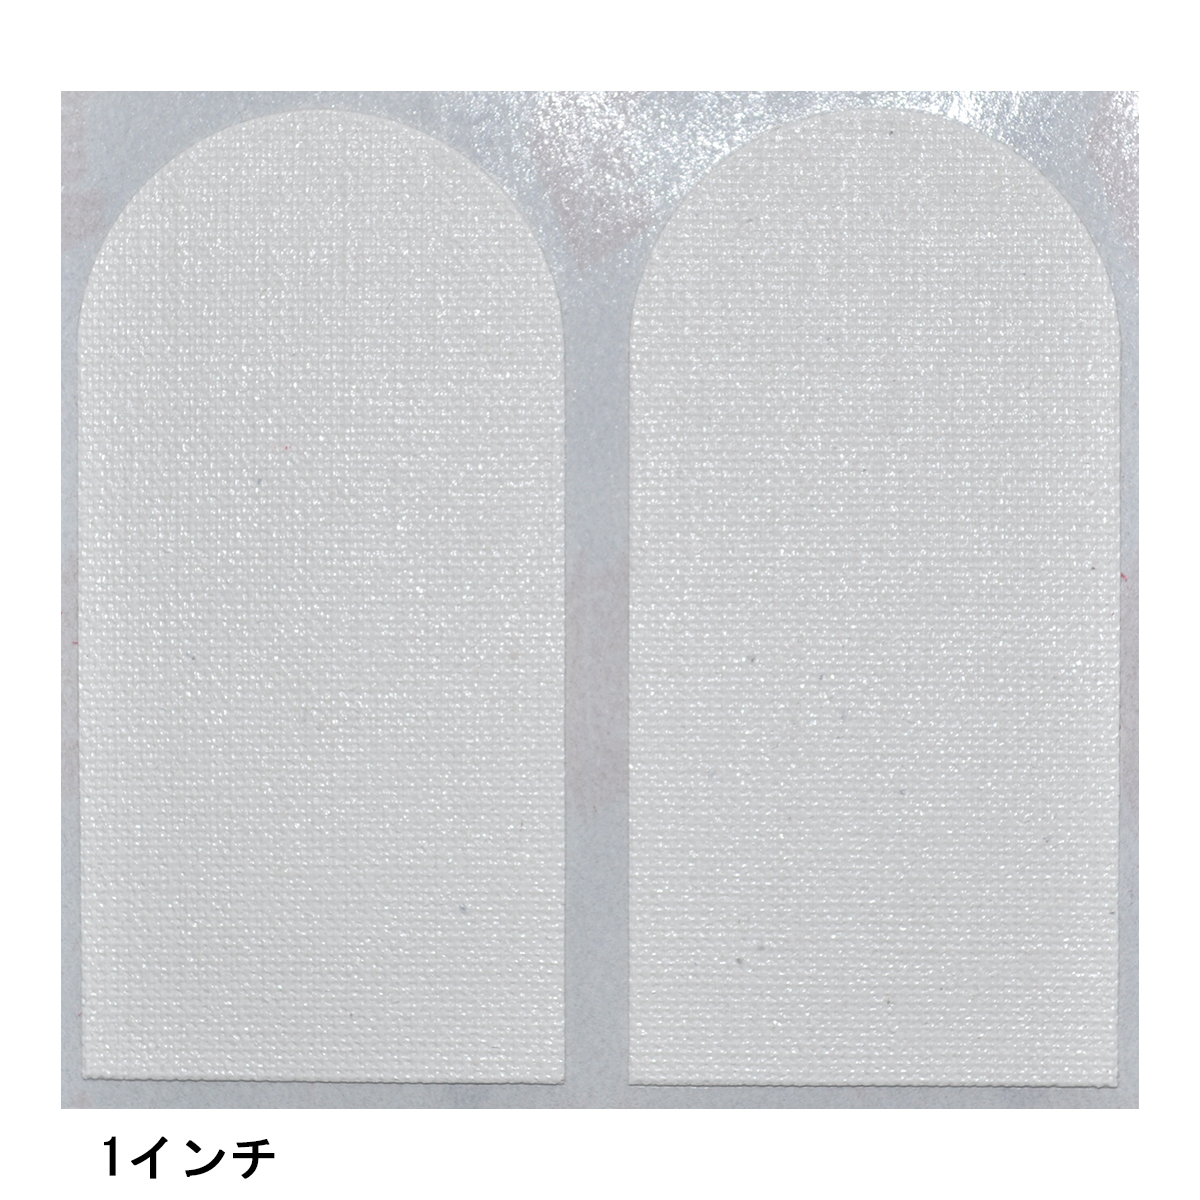 MASTERインサートテープ(ホワイト) [ABS] - 616円 : ボウリング用品通販 BOWLERS CRAFT noshiro_Web shop